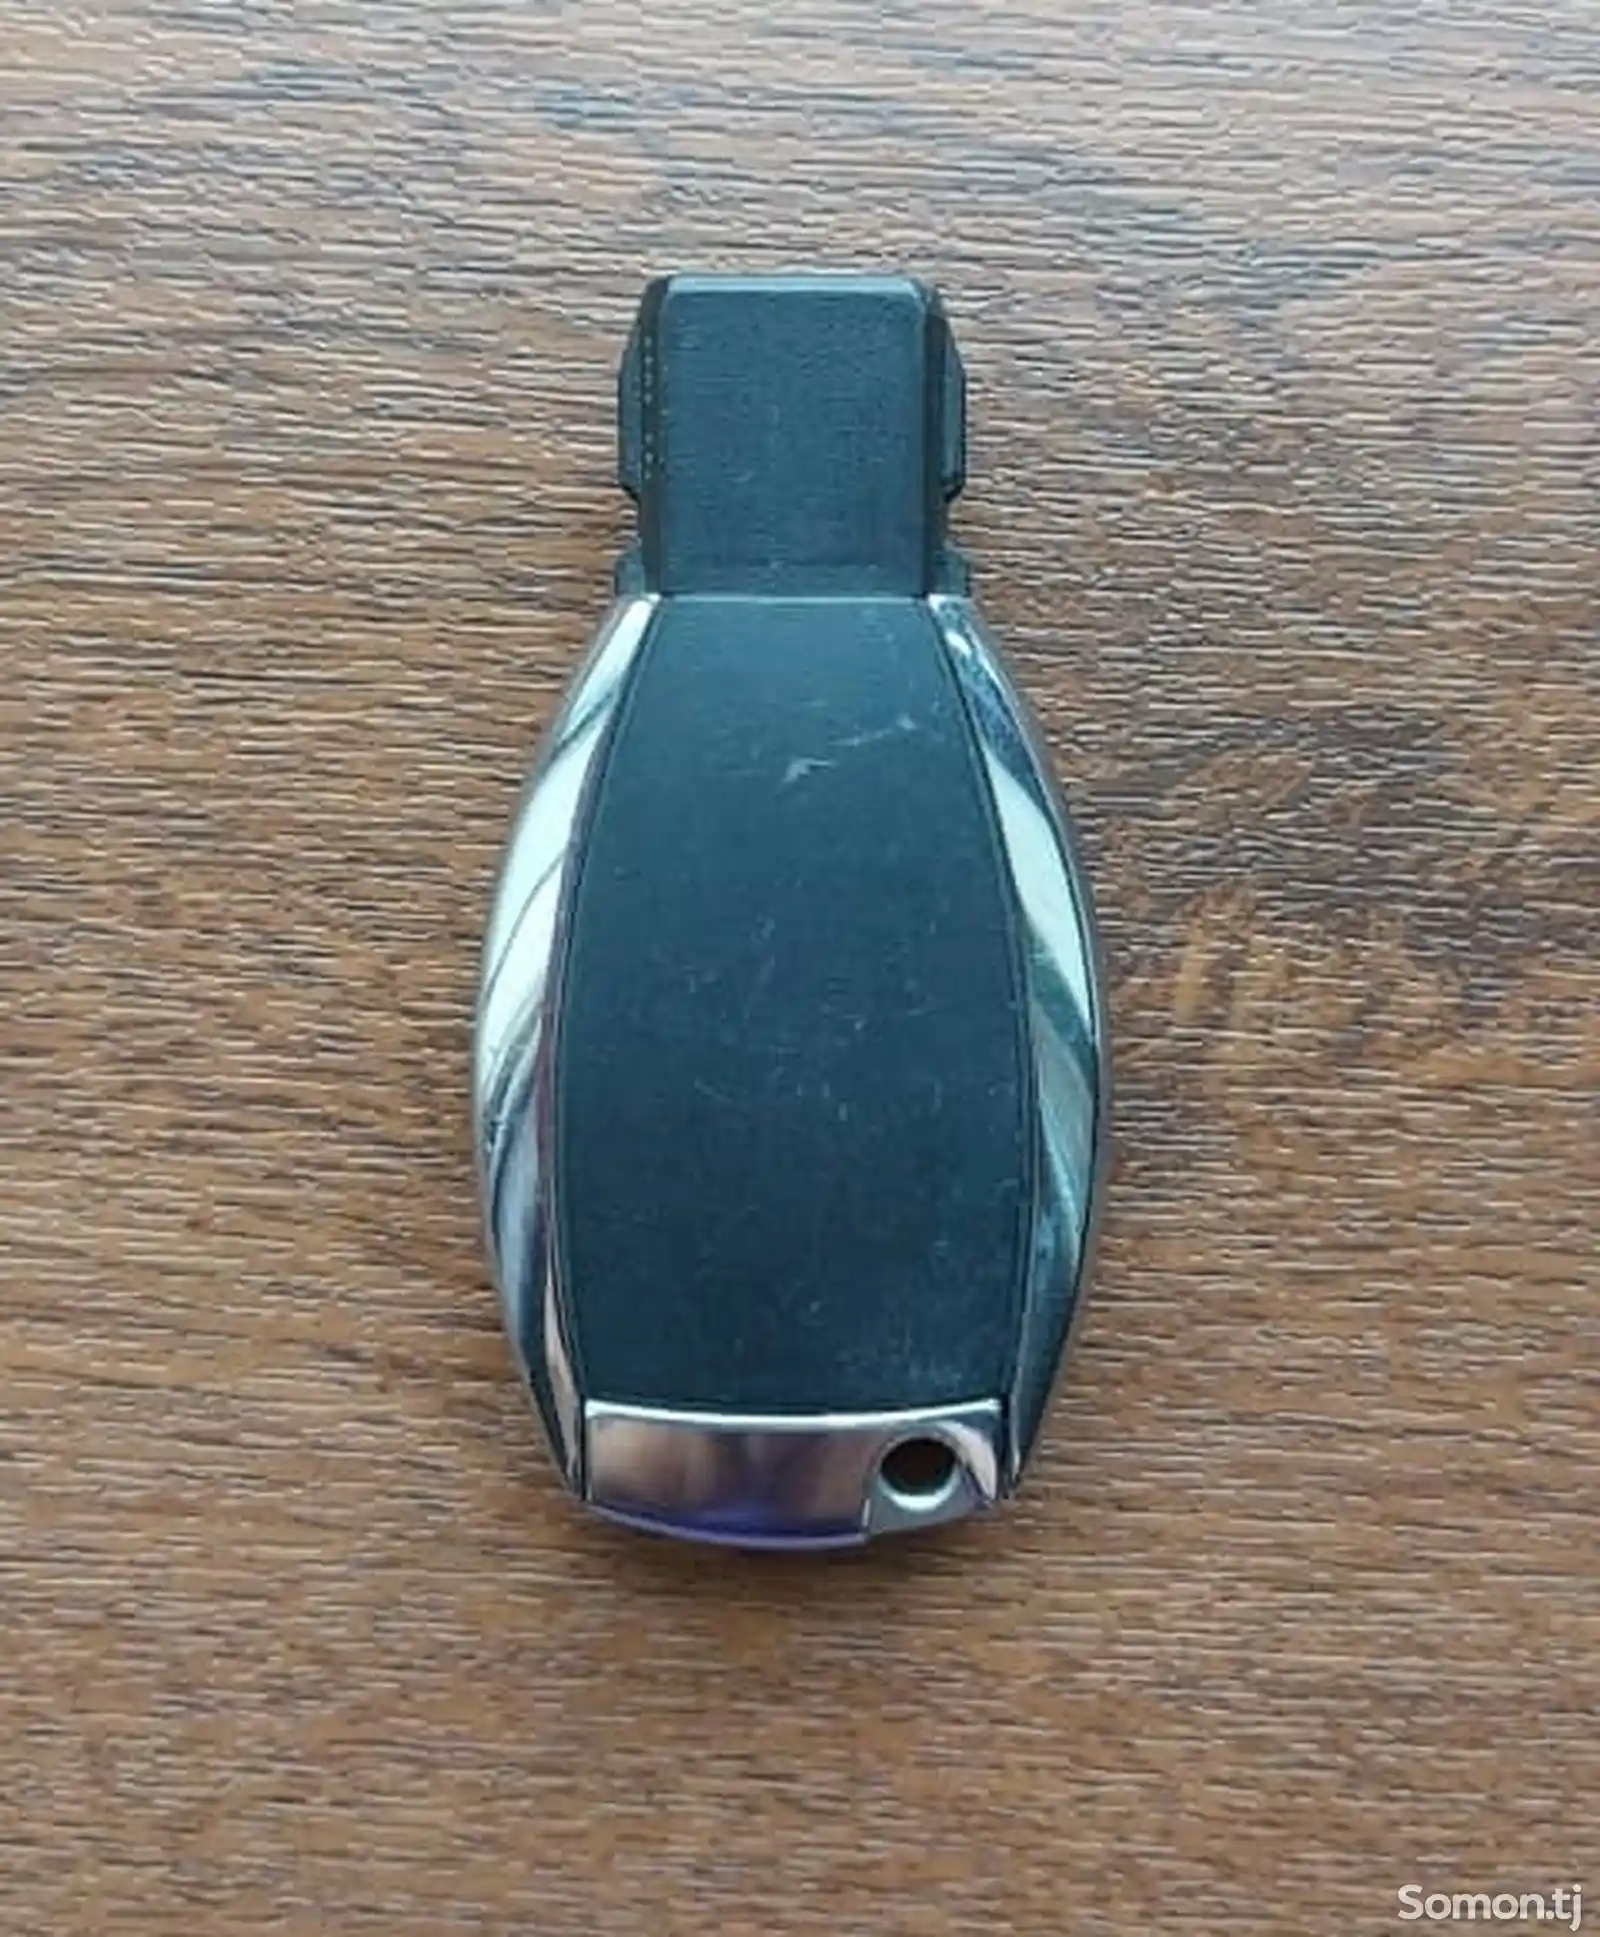 Ключ от Mercedes-Benz-1